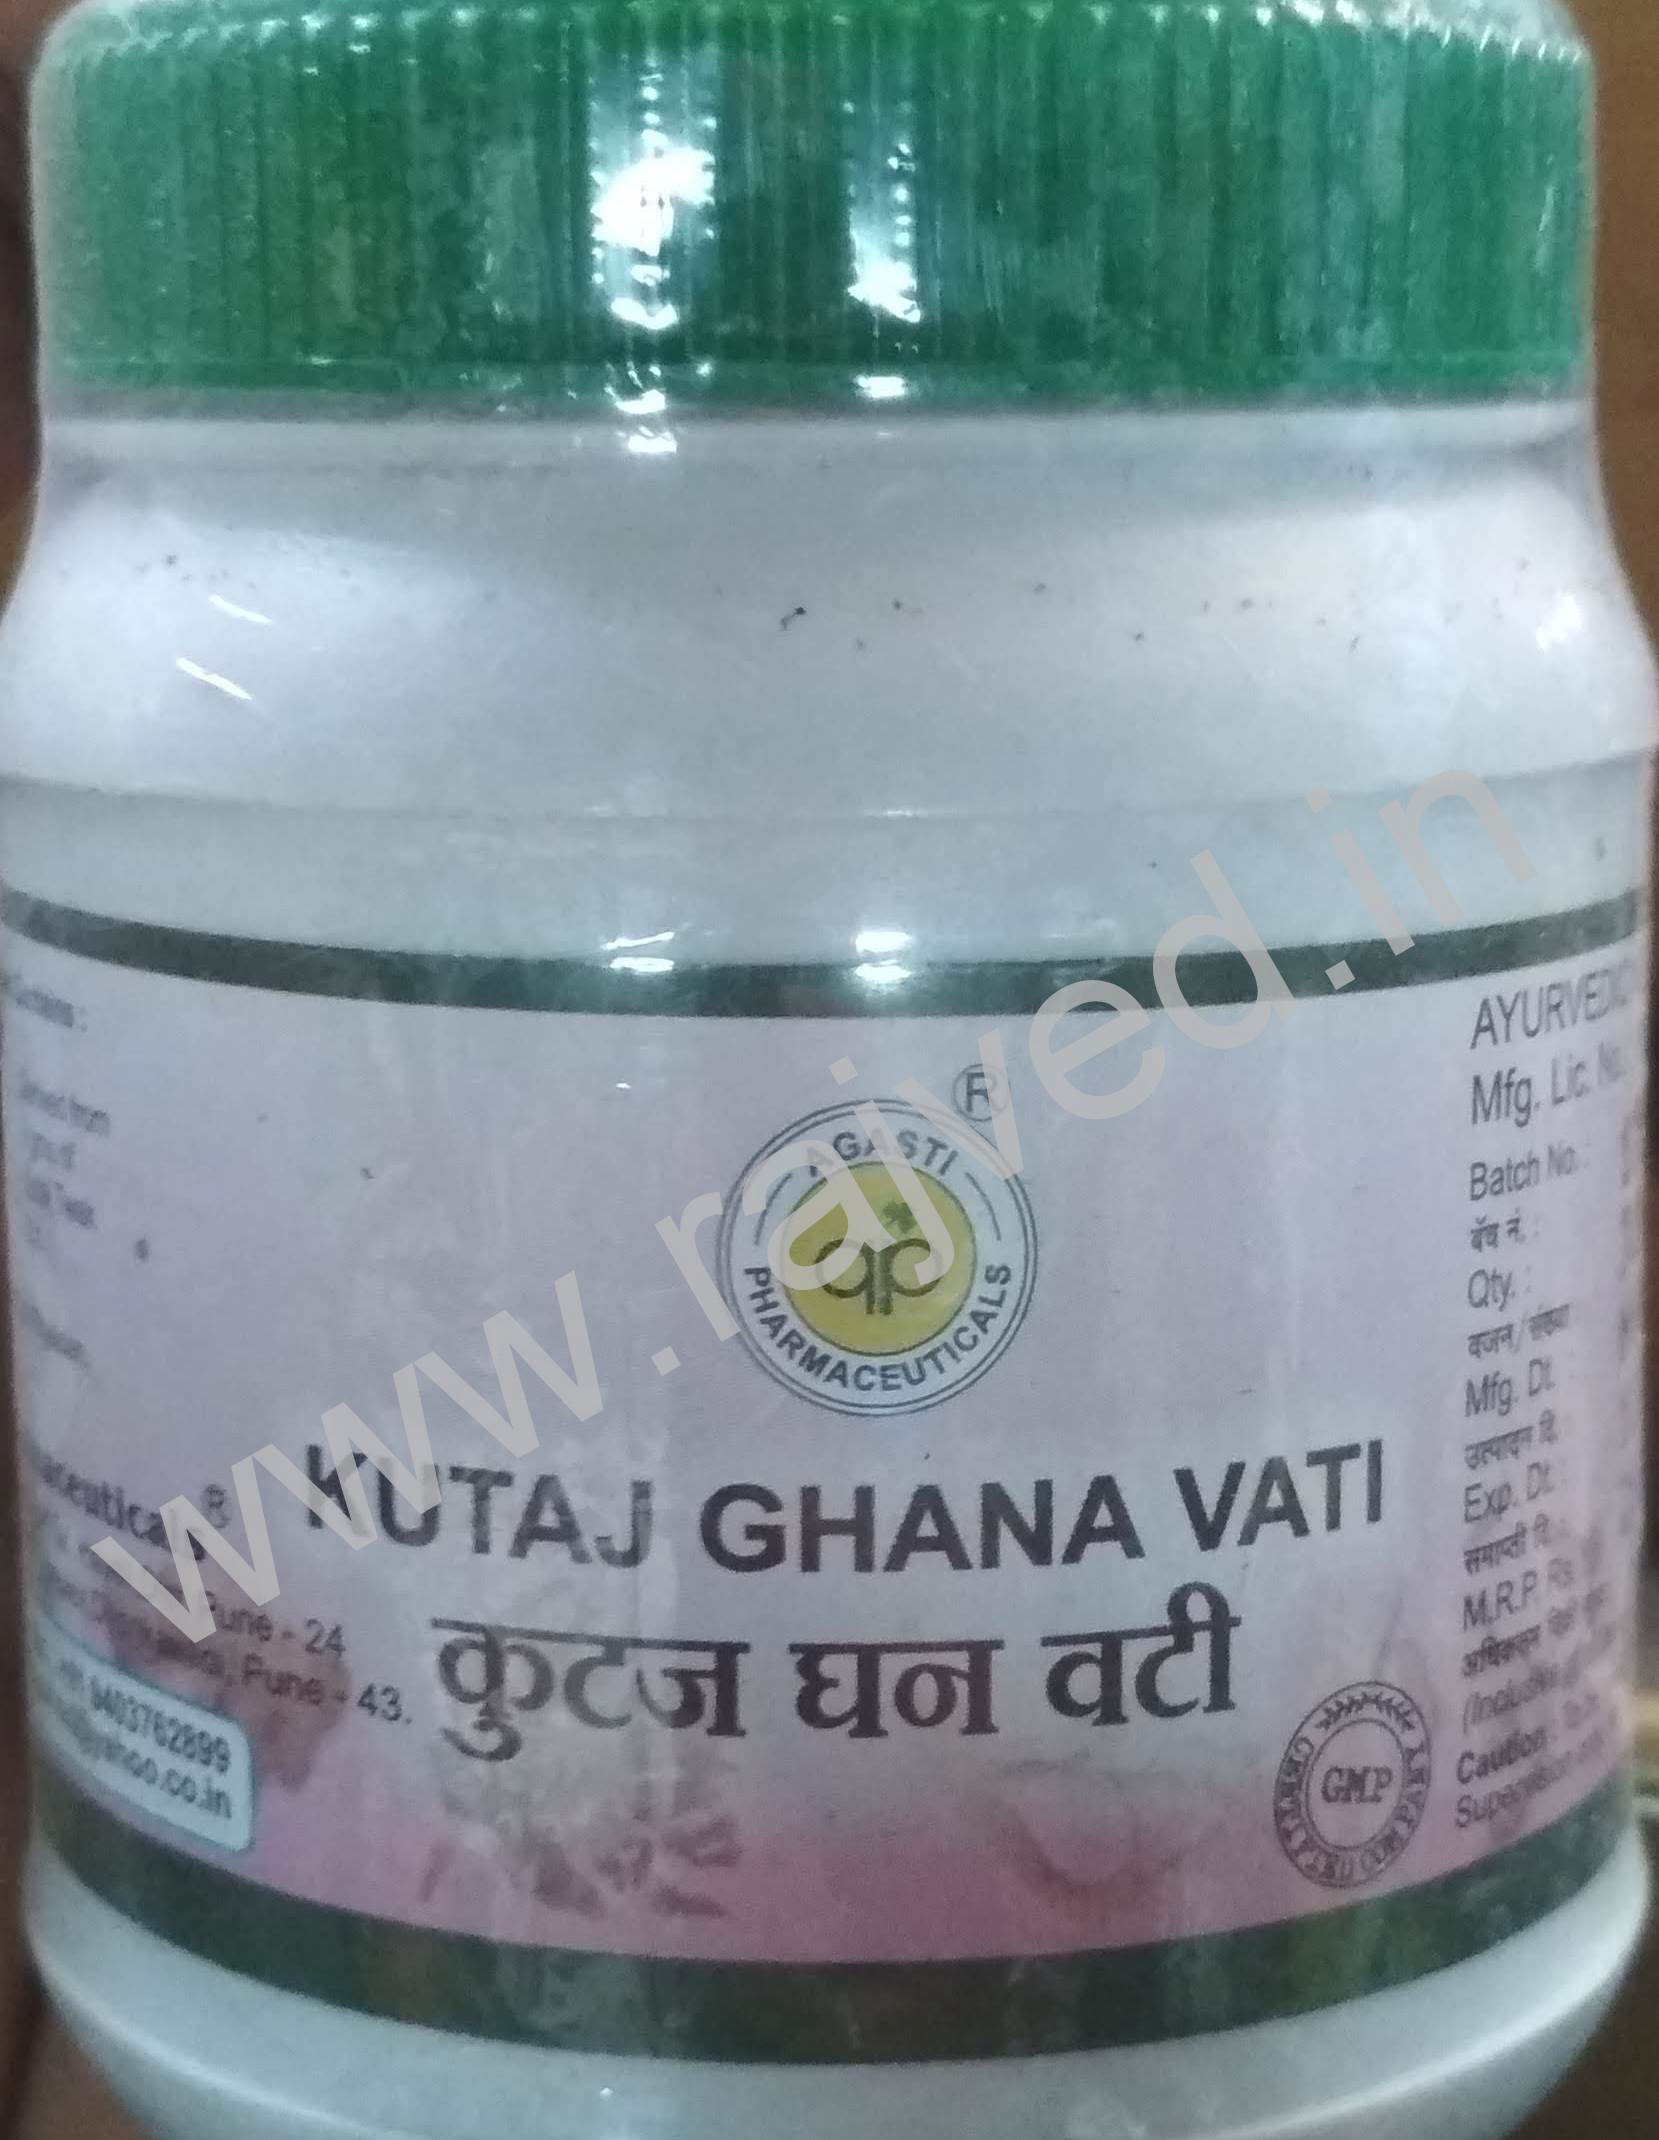 kutaj ghana vati 1000 gm 4000 tablet upto 15% off agasti pharmaceuticals